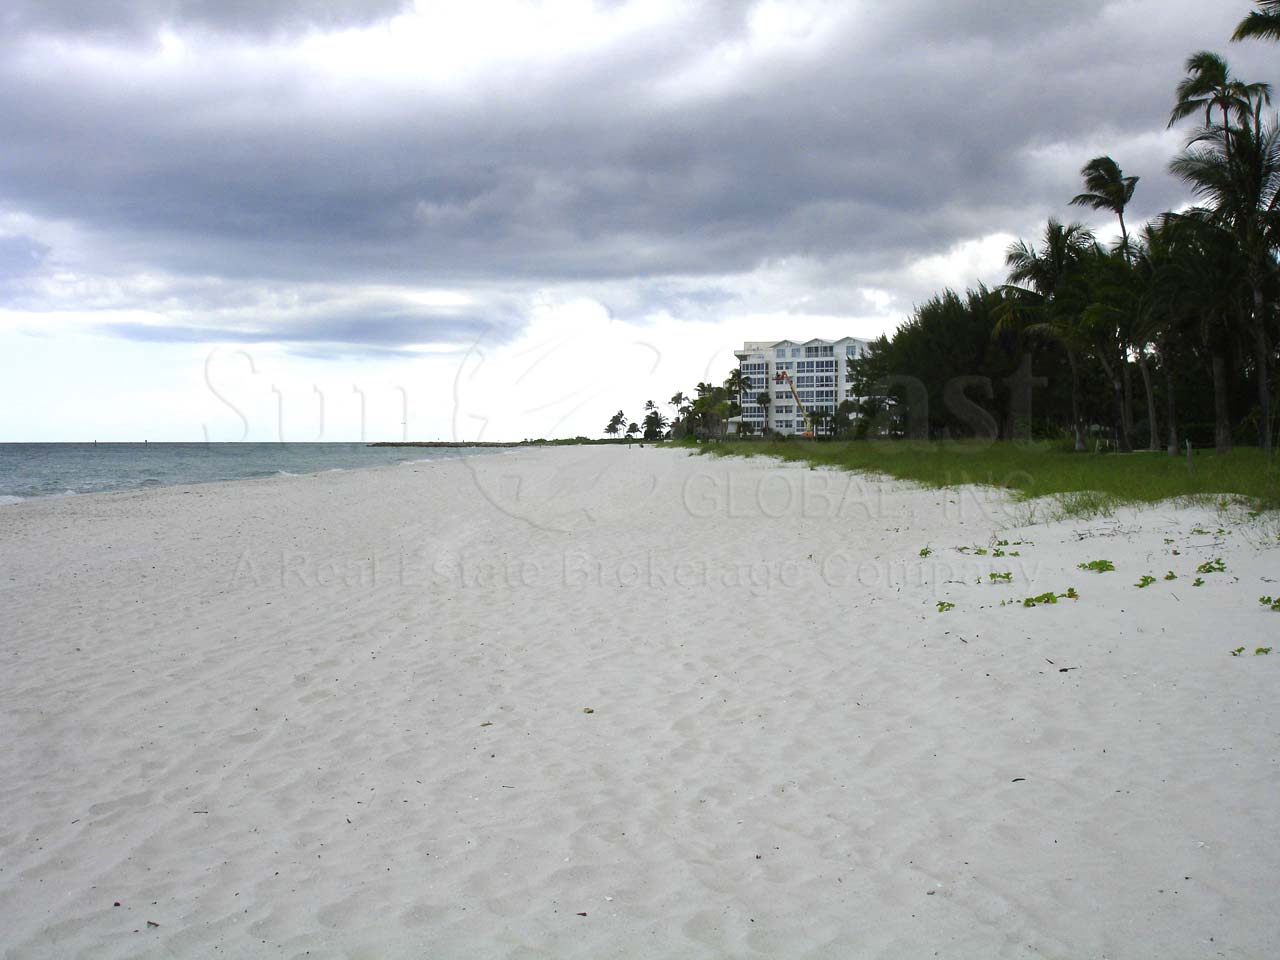 Diplomat Club View of Beach